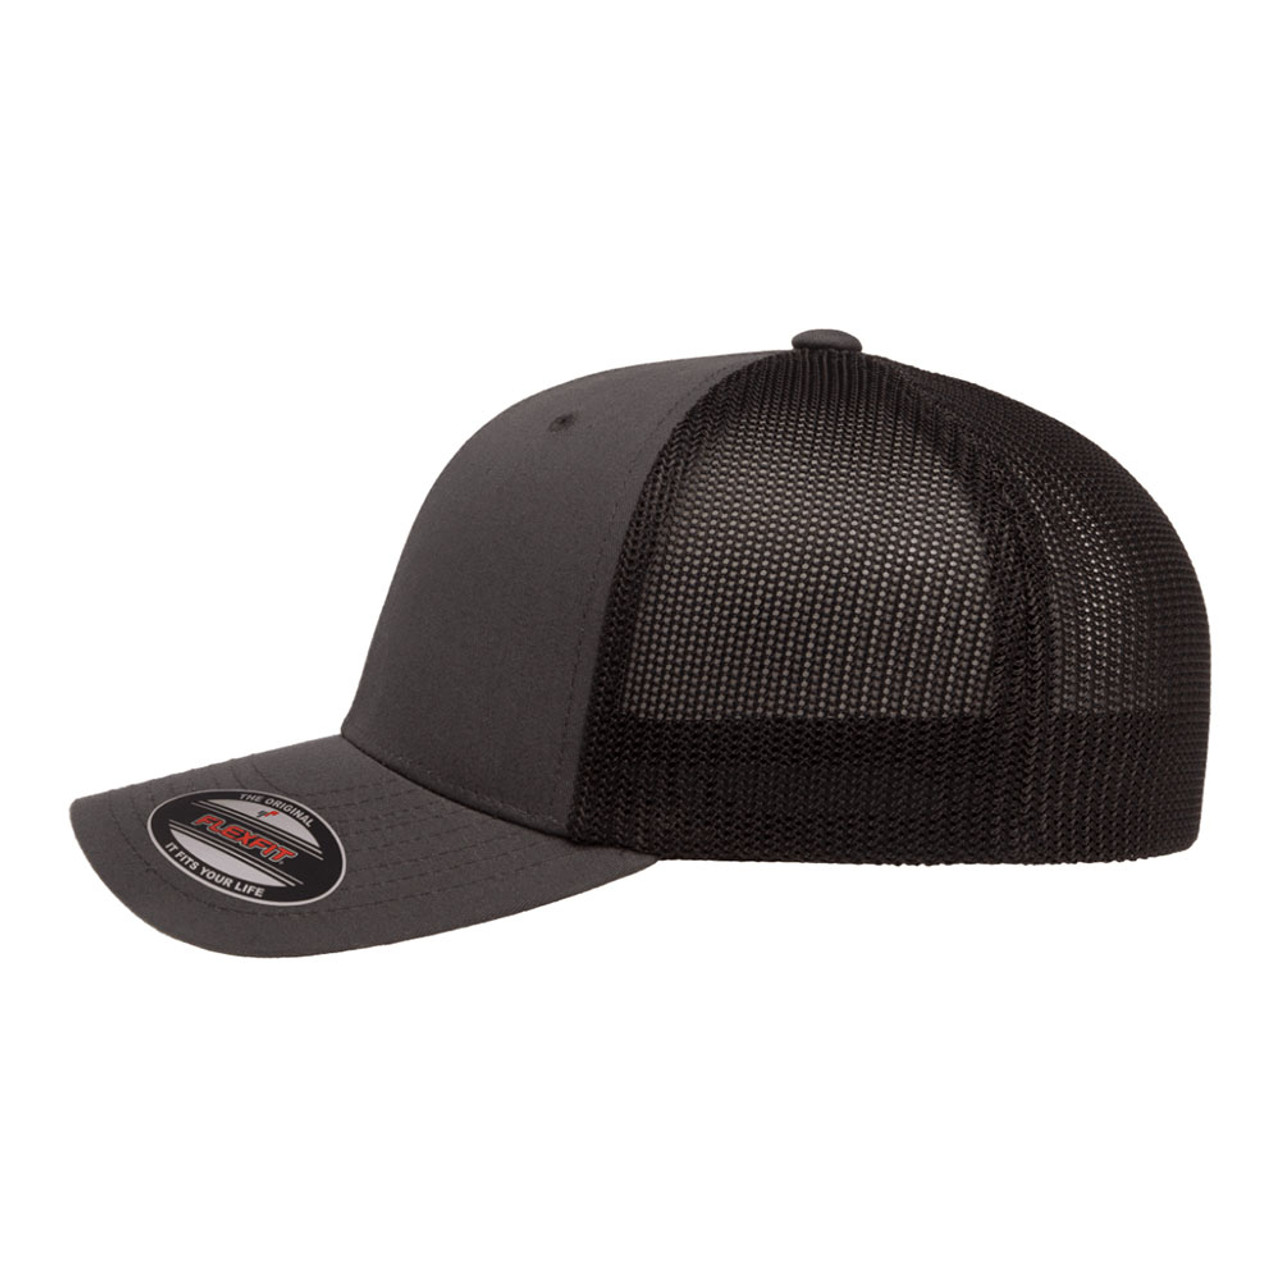 Flexfit Trucker Mesh Cap - 2-Tone - One Dozen | The Jac Hat